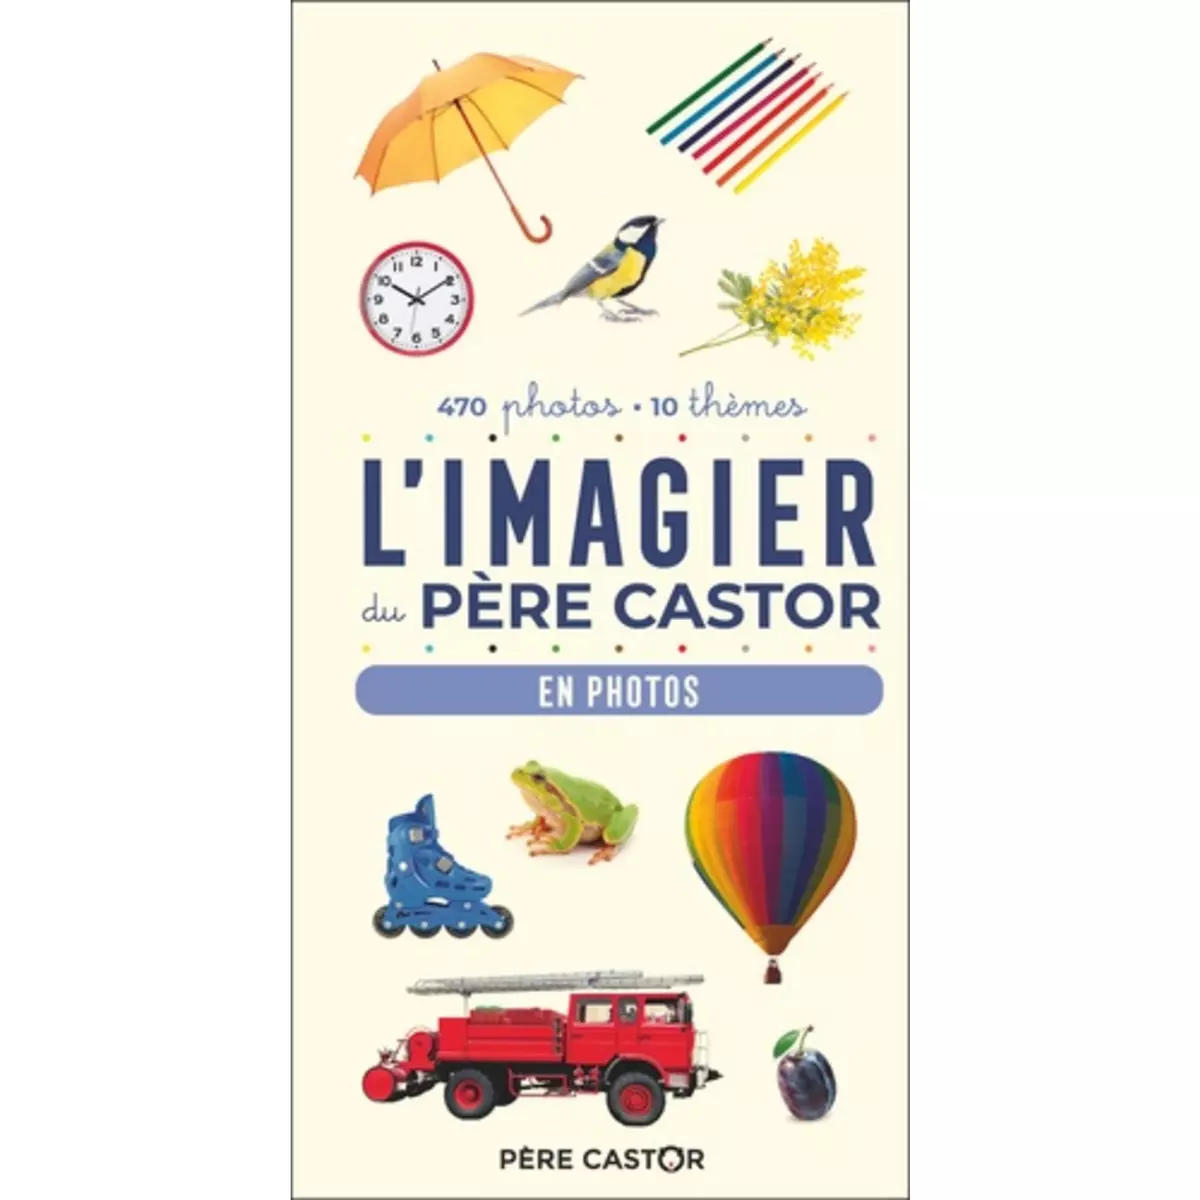  L'IMAGIER DU PERE CASTOR. EN PHOTOS, Telier A.